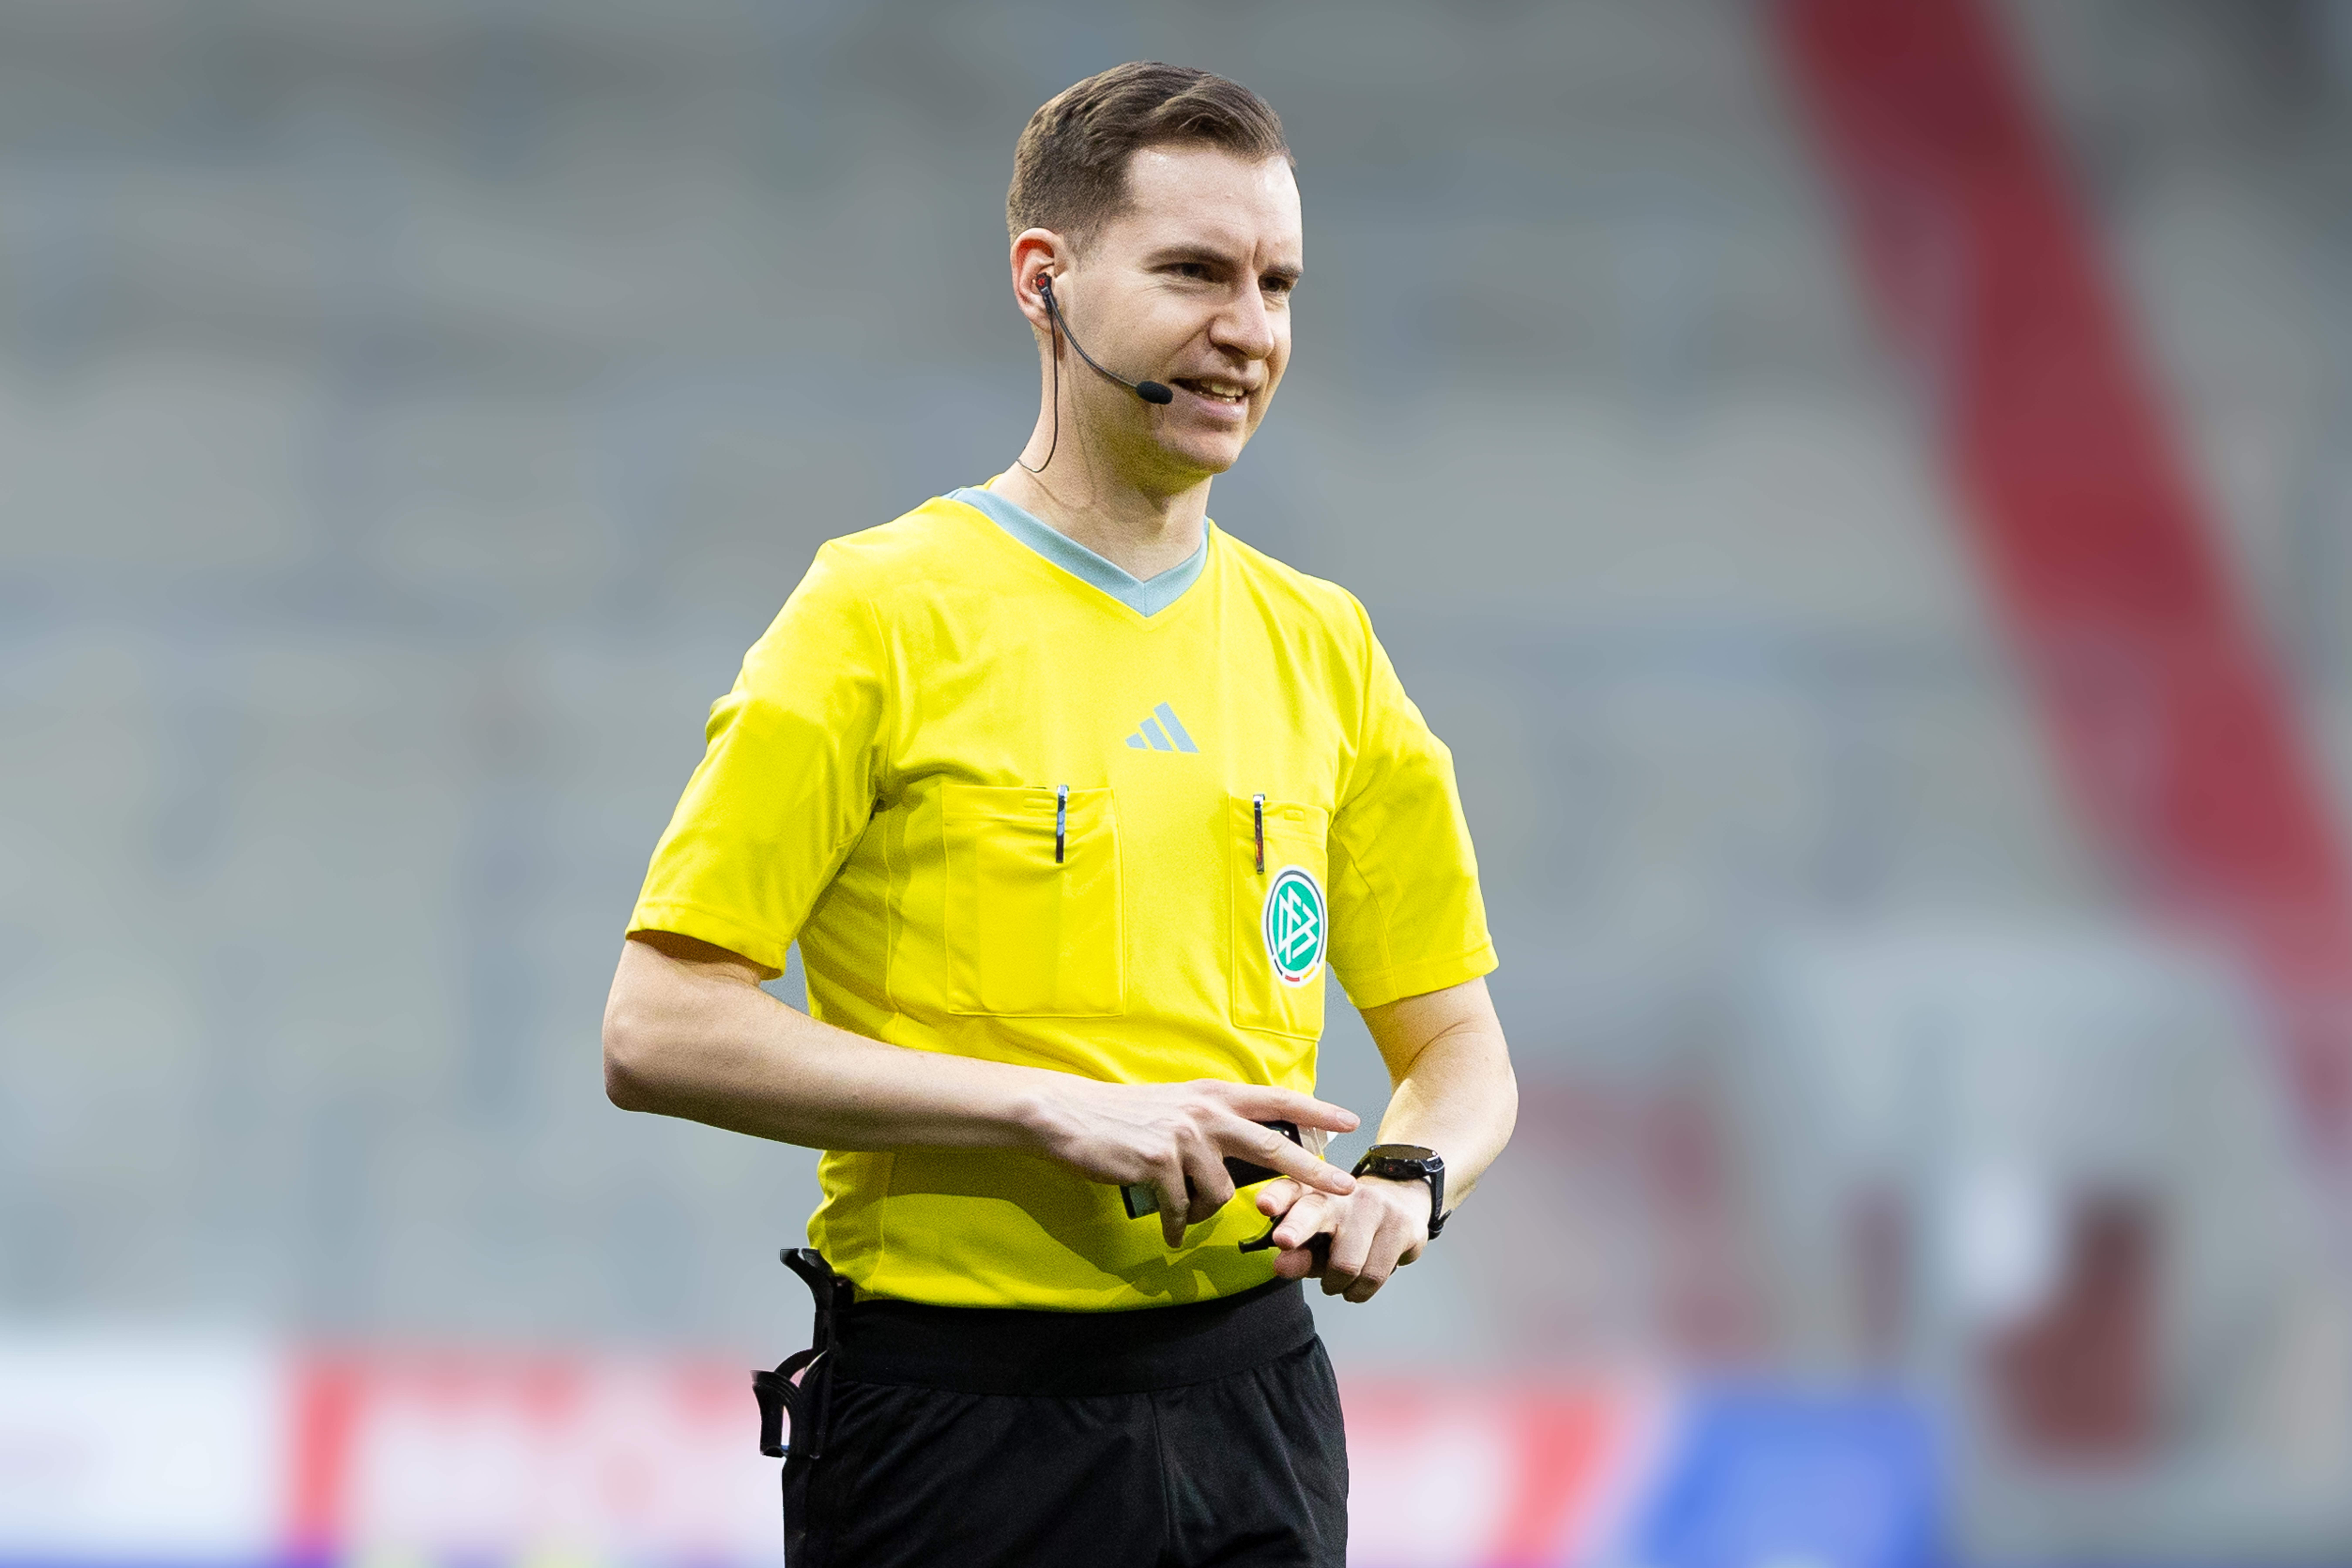 Schiedsrichter Martin Speckner beim Spiel Ingolstadt gegen Bielefeld